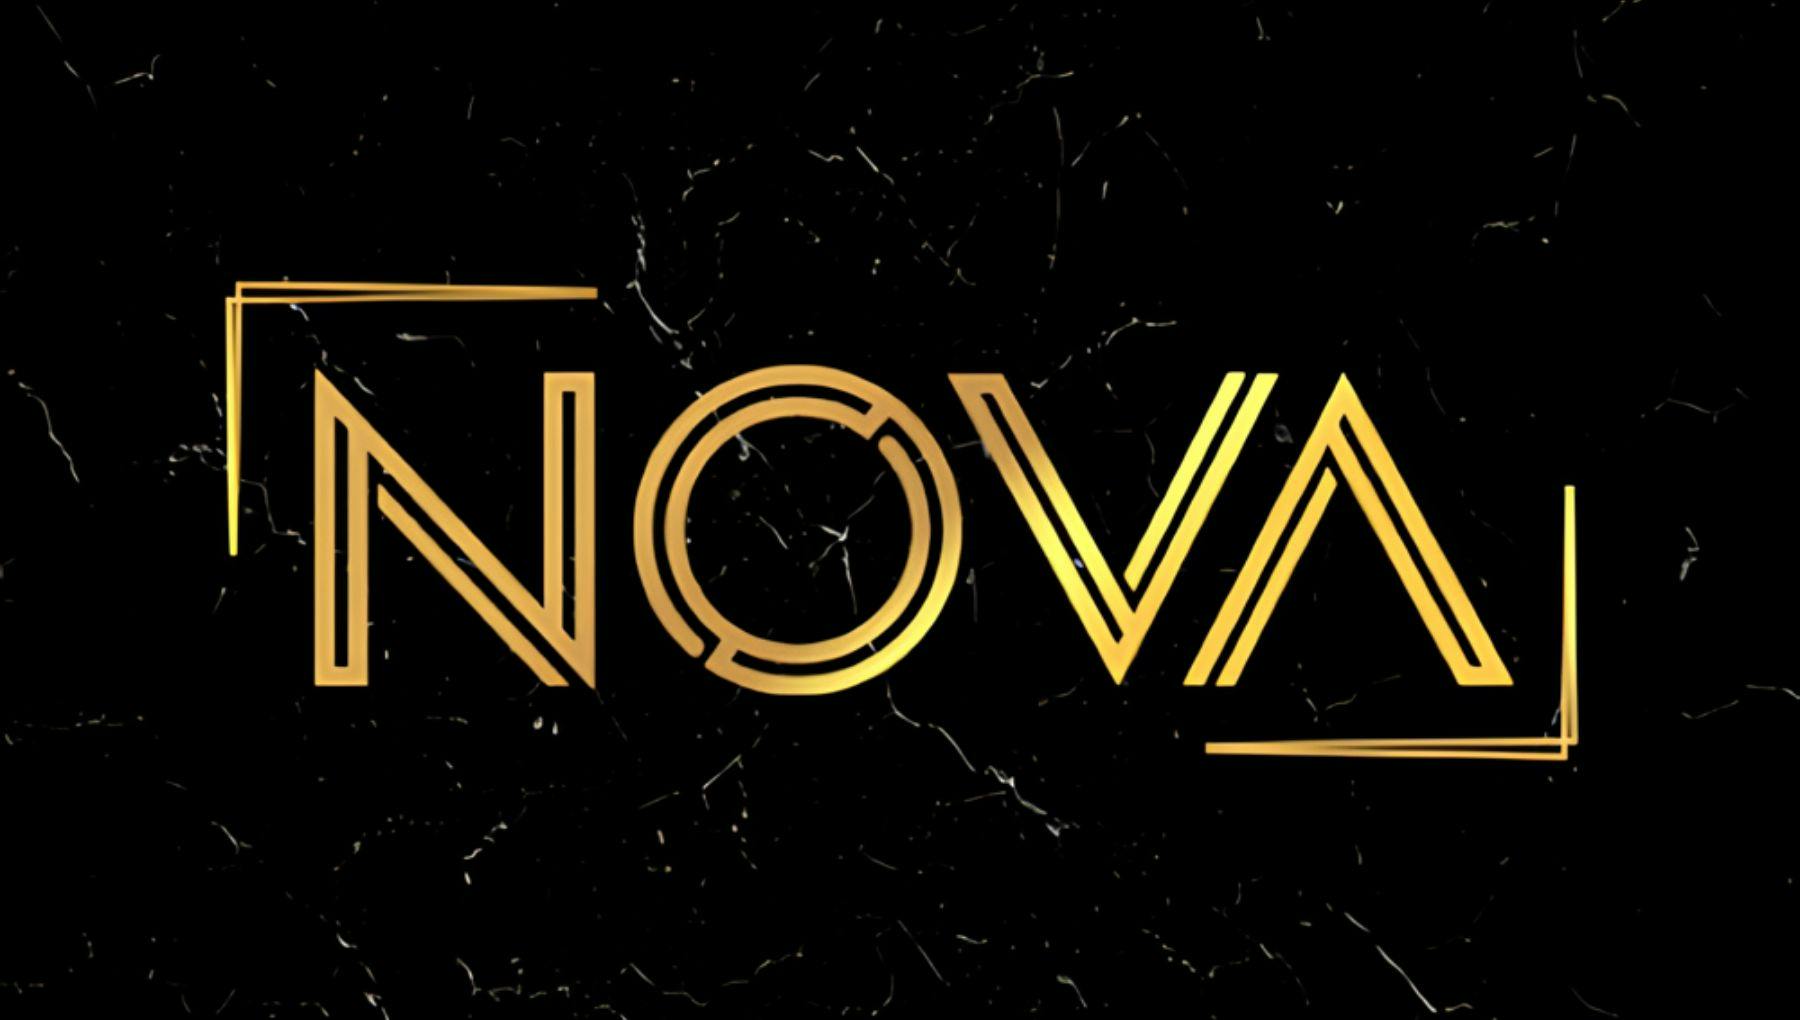 Nova | Flames and Fire